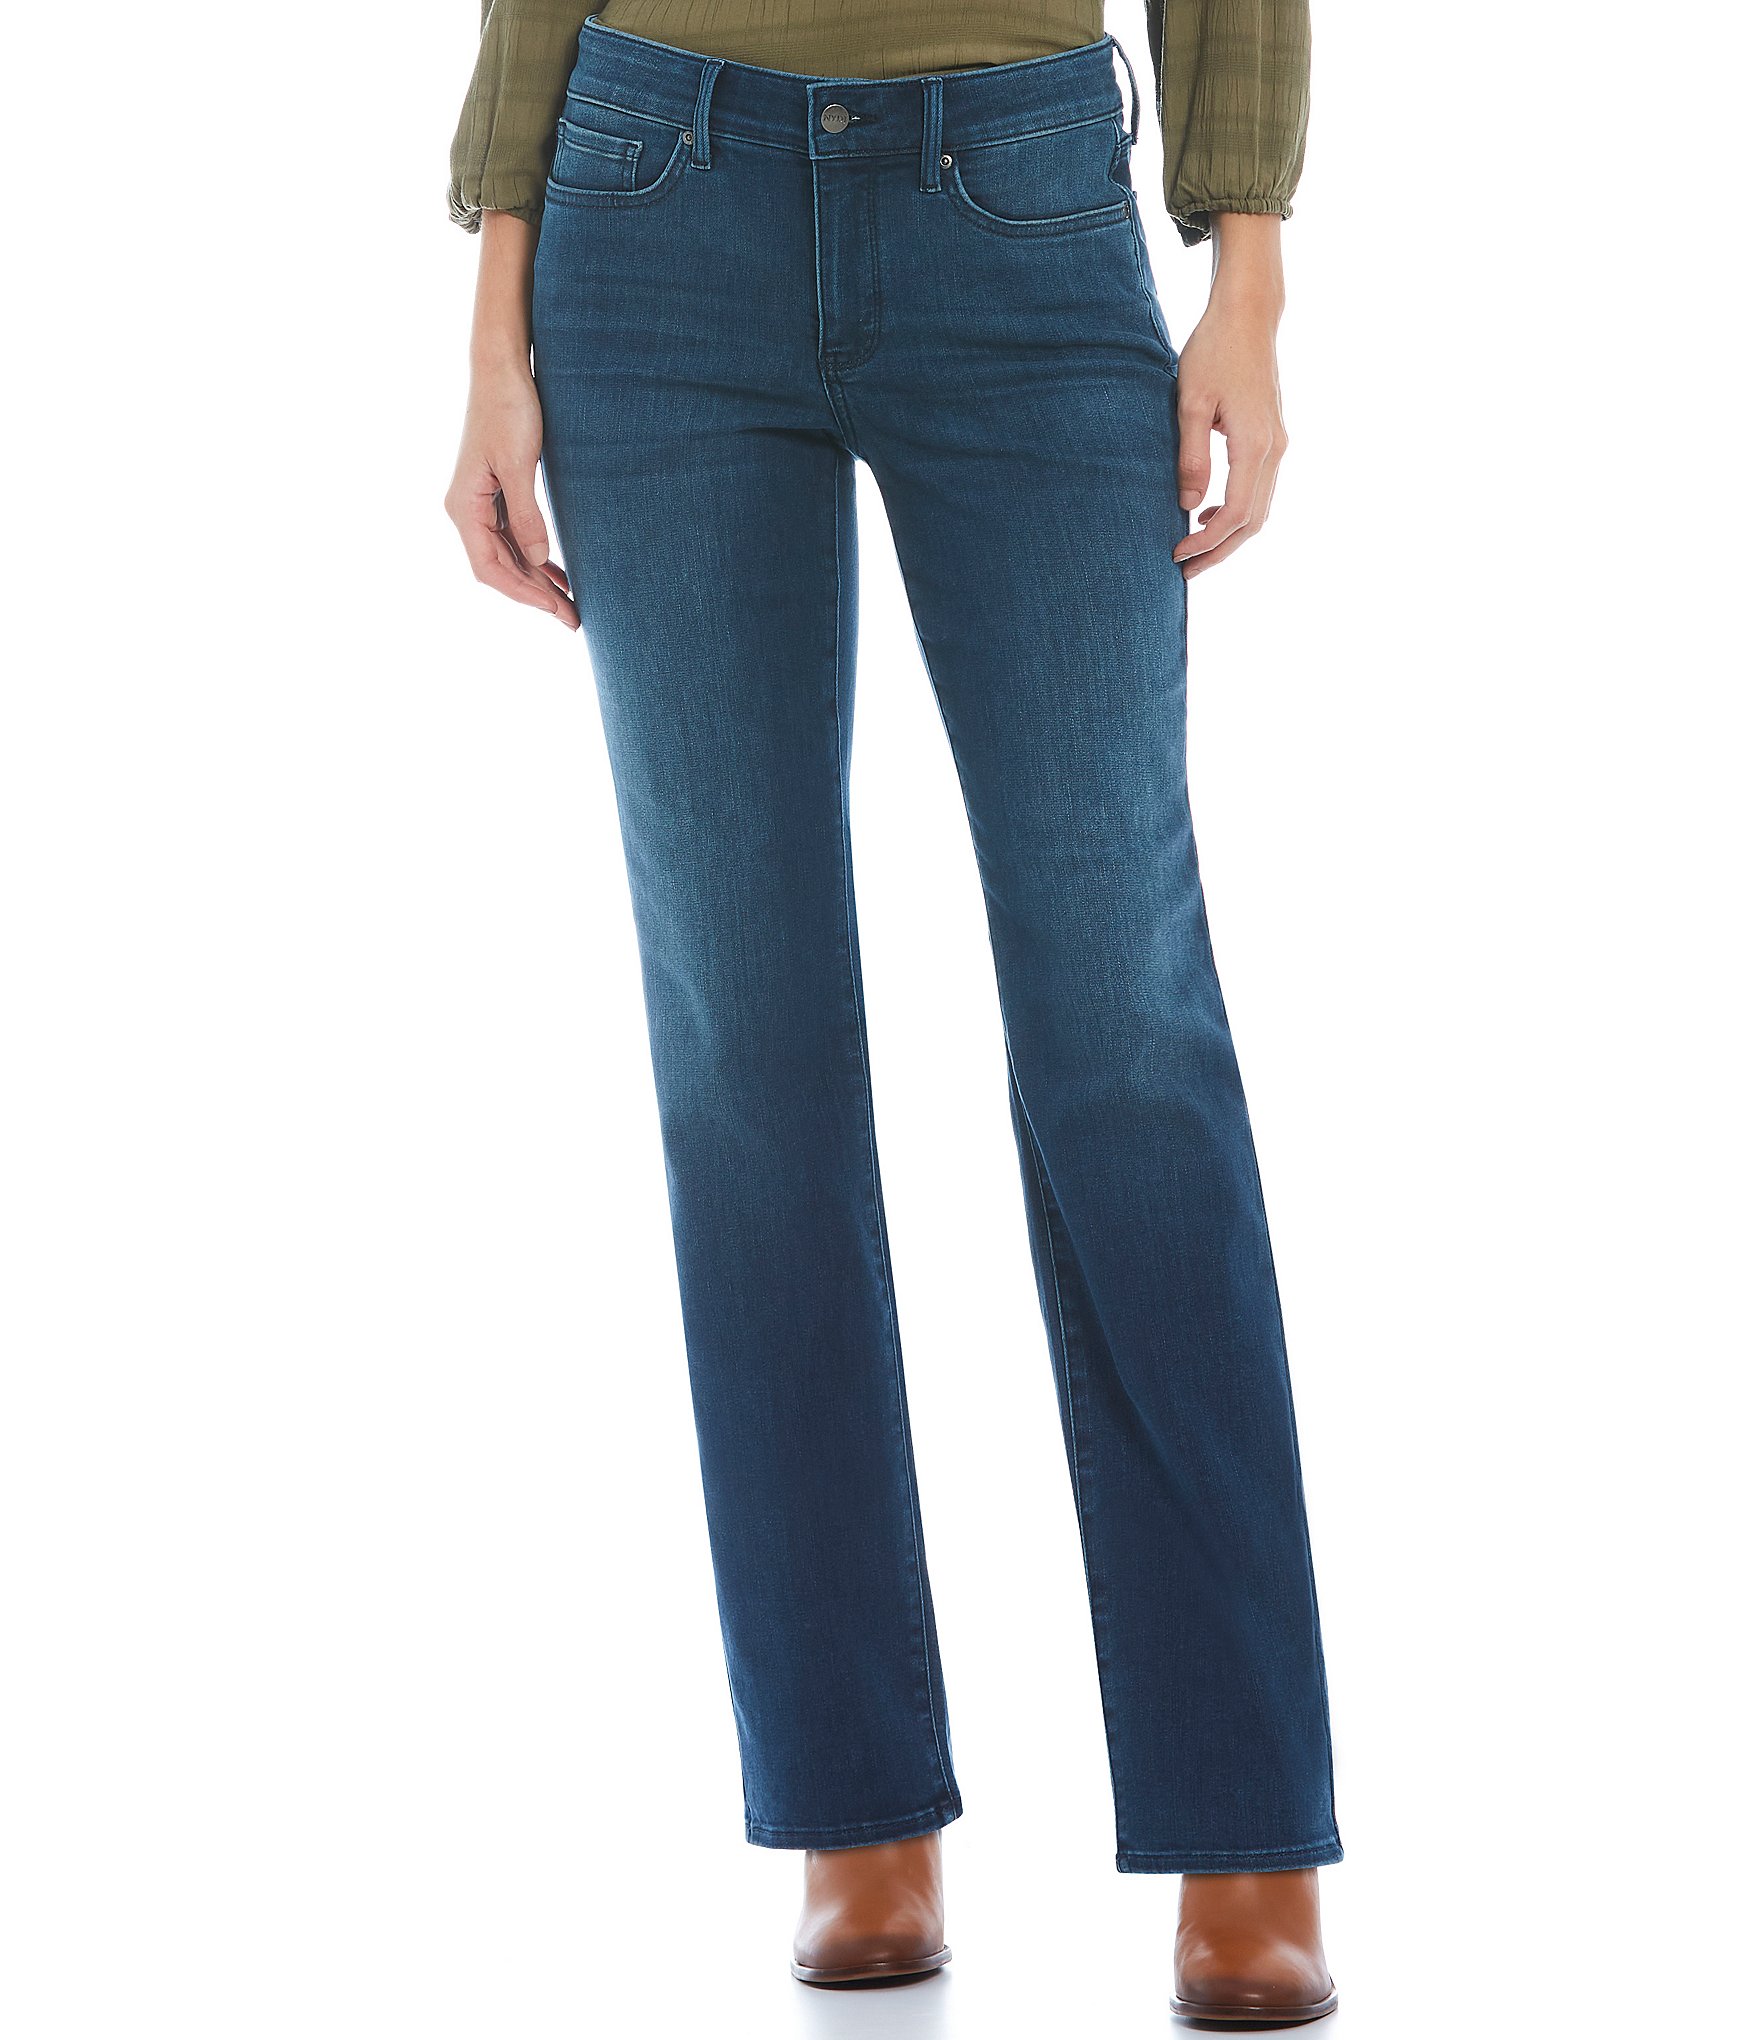 NYDJ Petite Size Marilyn Straight Leg Mid Rise Denim Jeans Dillard's